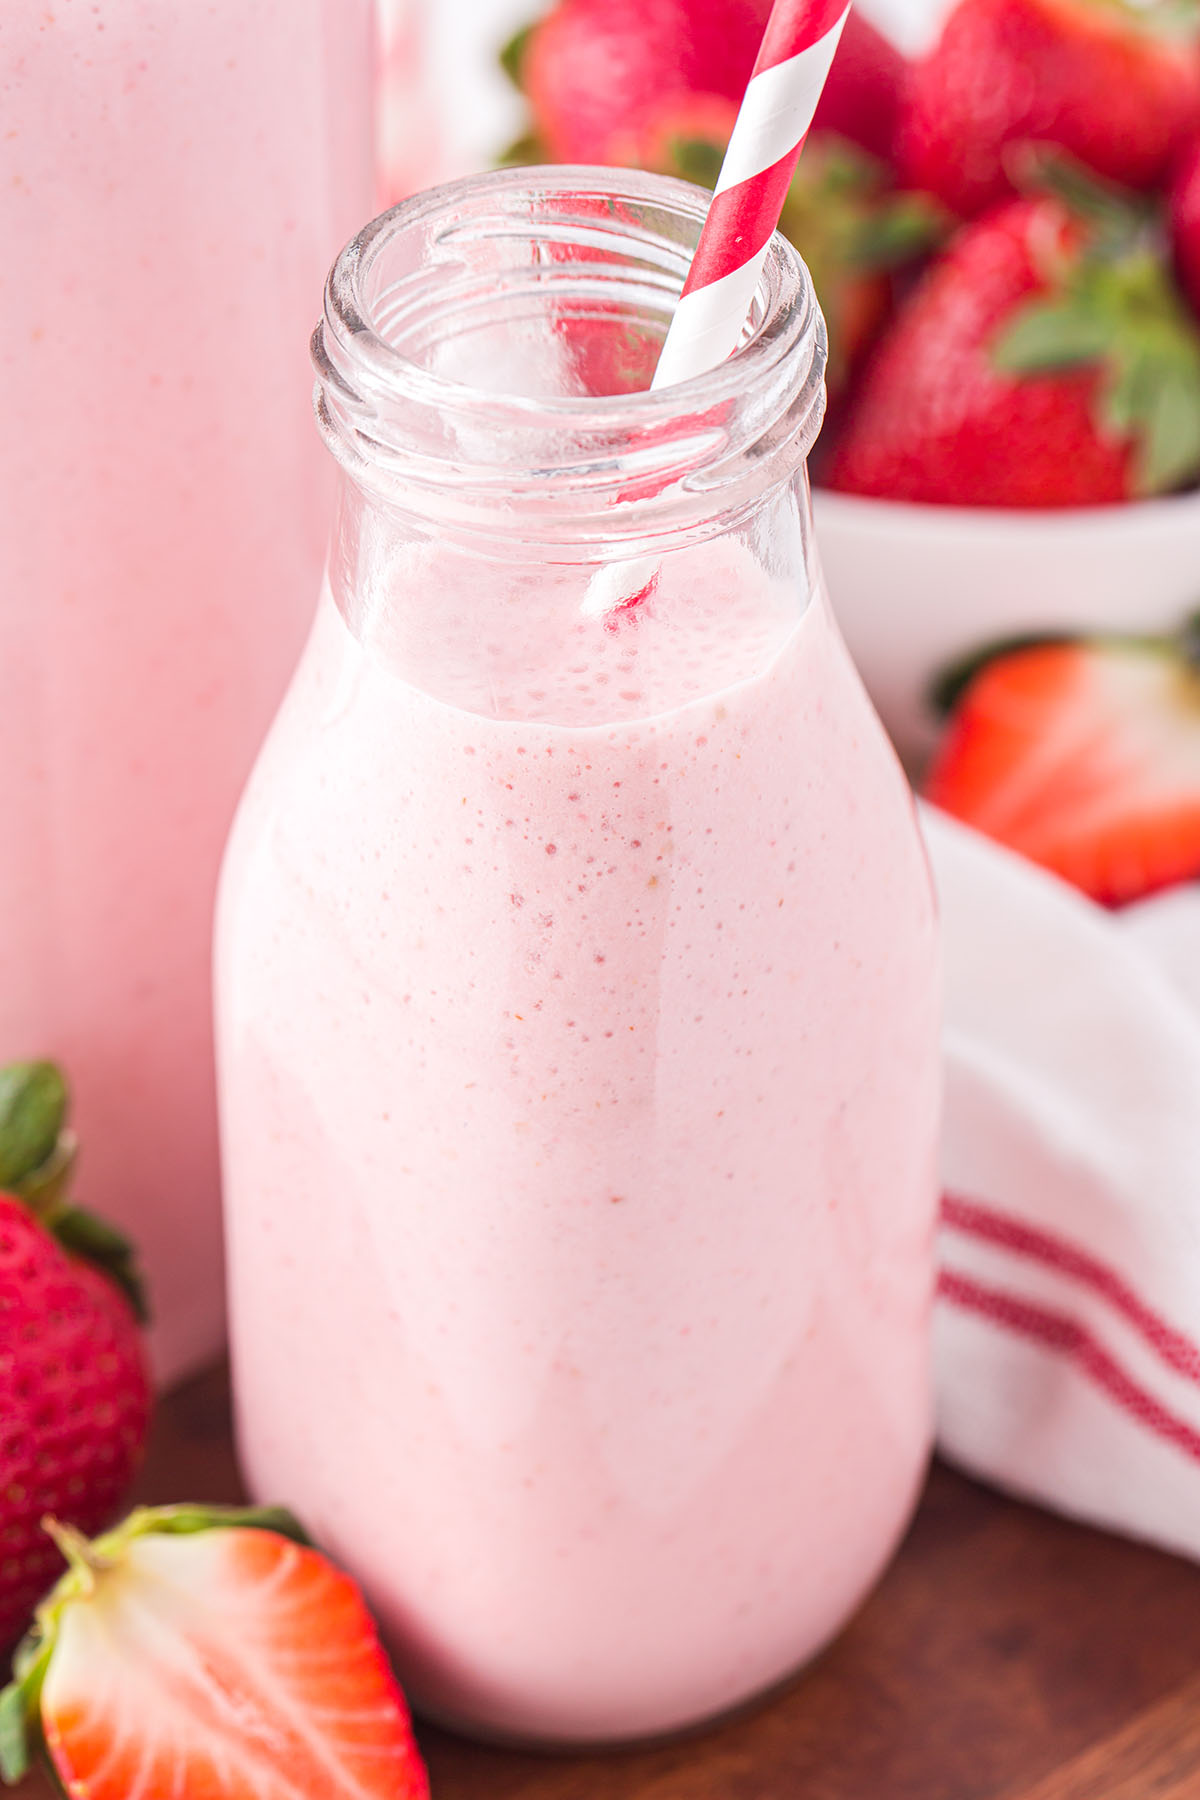 strawberry milk in a glass bottle